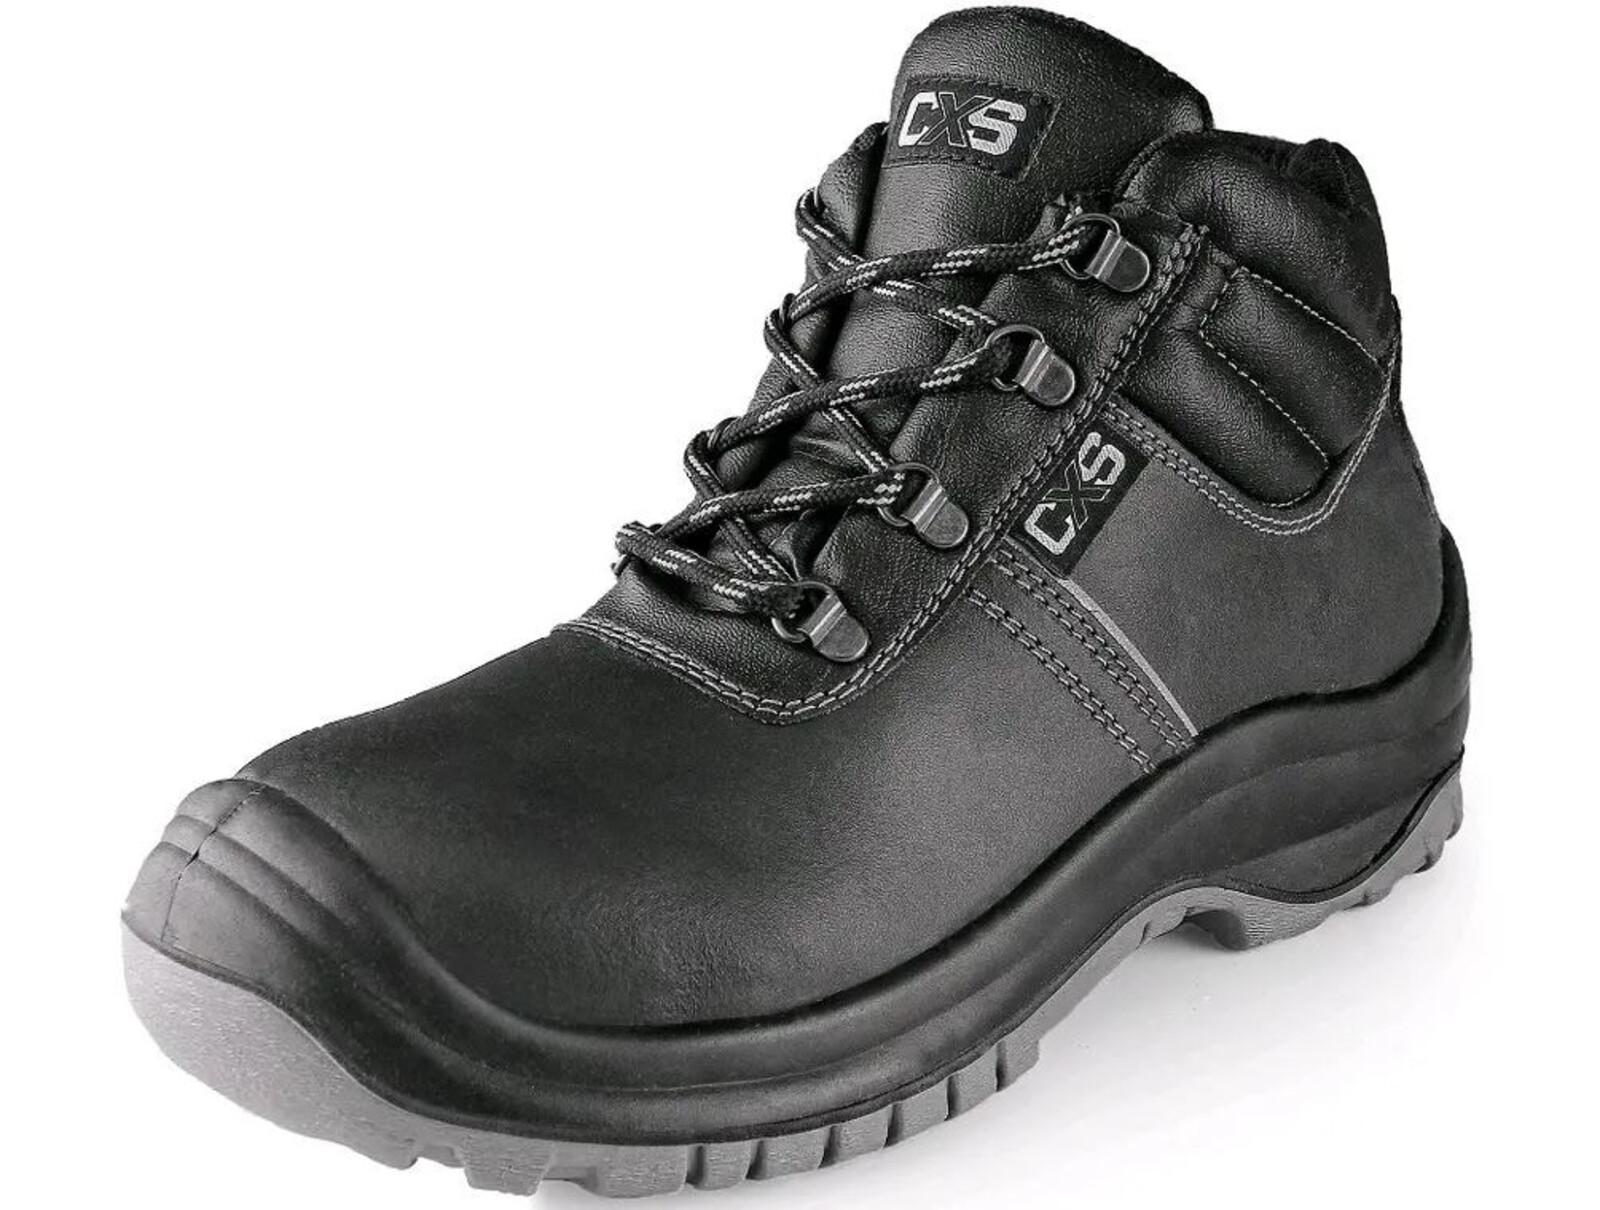 Bezpečnostná členková obuv CXS Safety Steel Mangan S3 - veľkosť: 45, farba: čierna